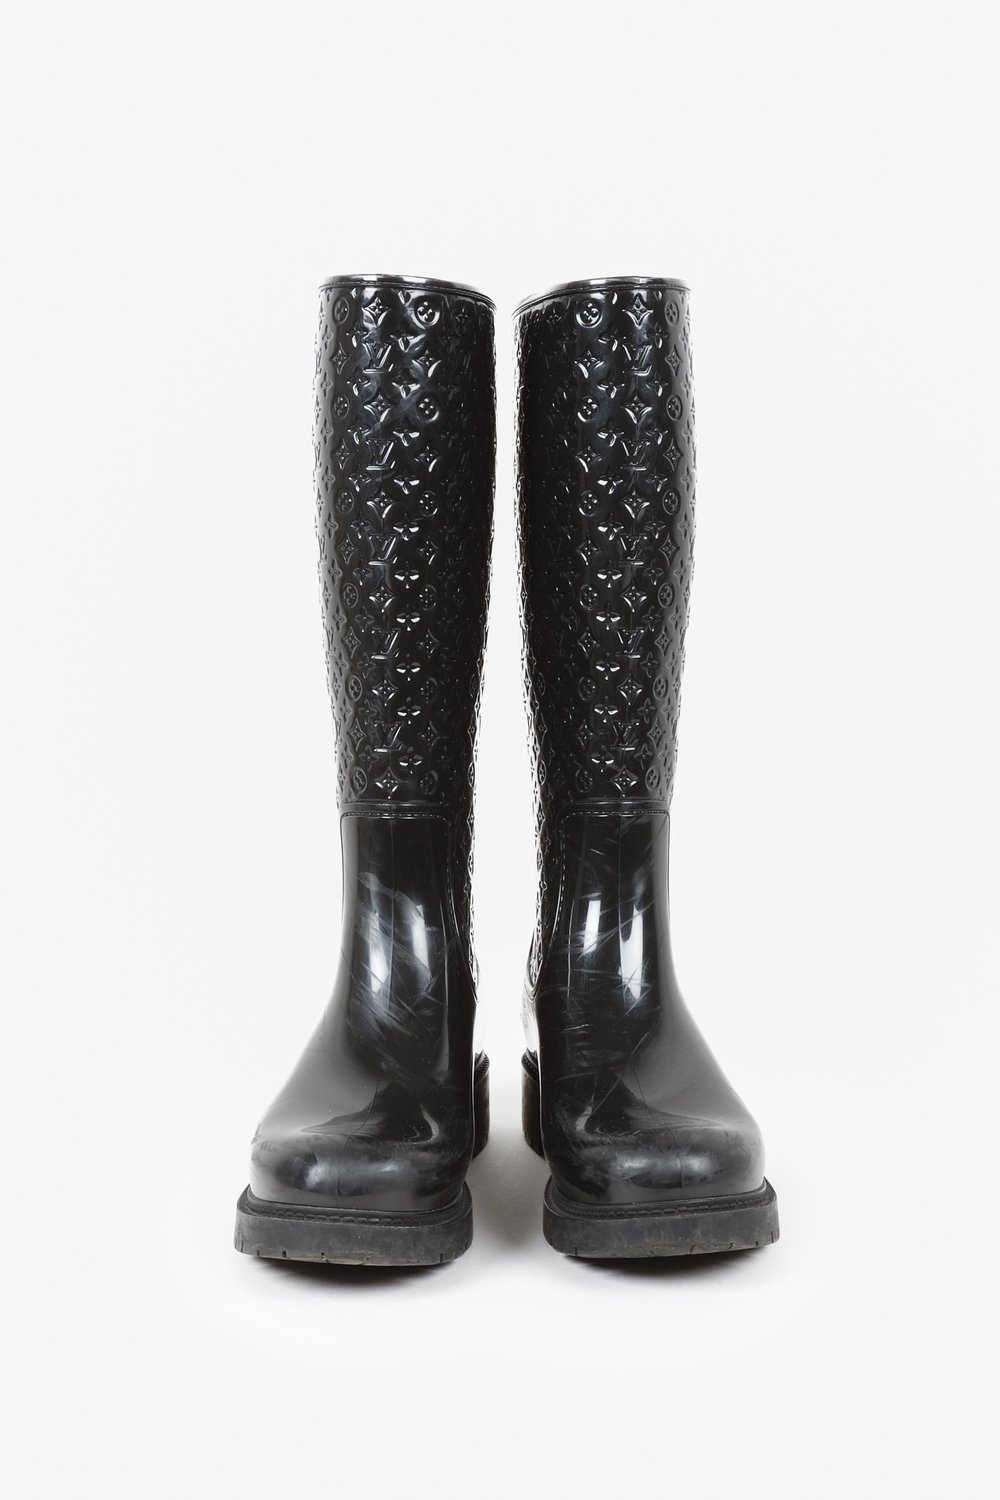 Louis Vuitton Black Monogram Rubber Splash Rain Boots Size 38 Louis Vuitton